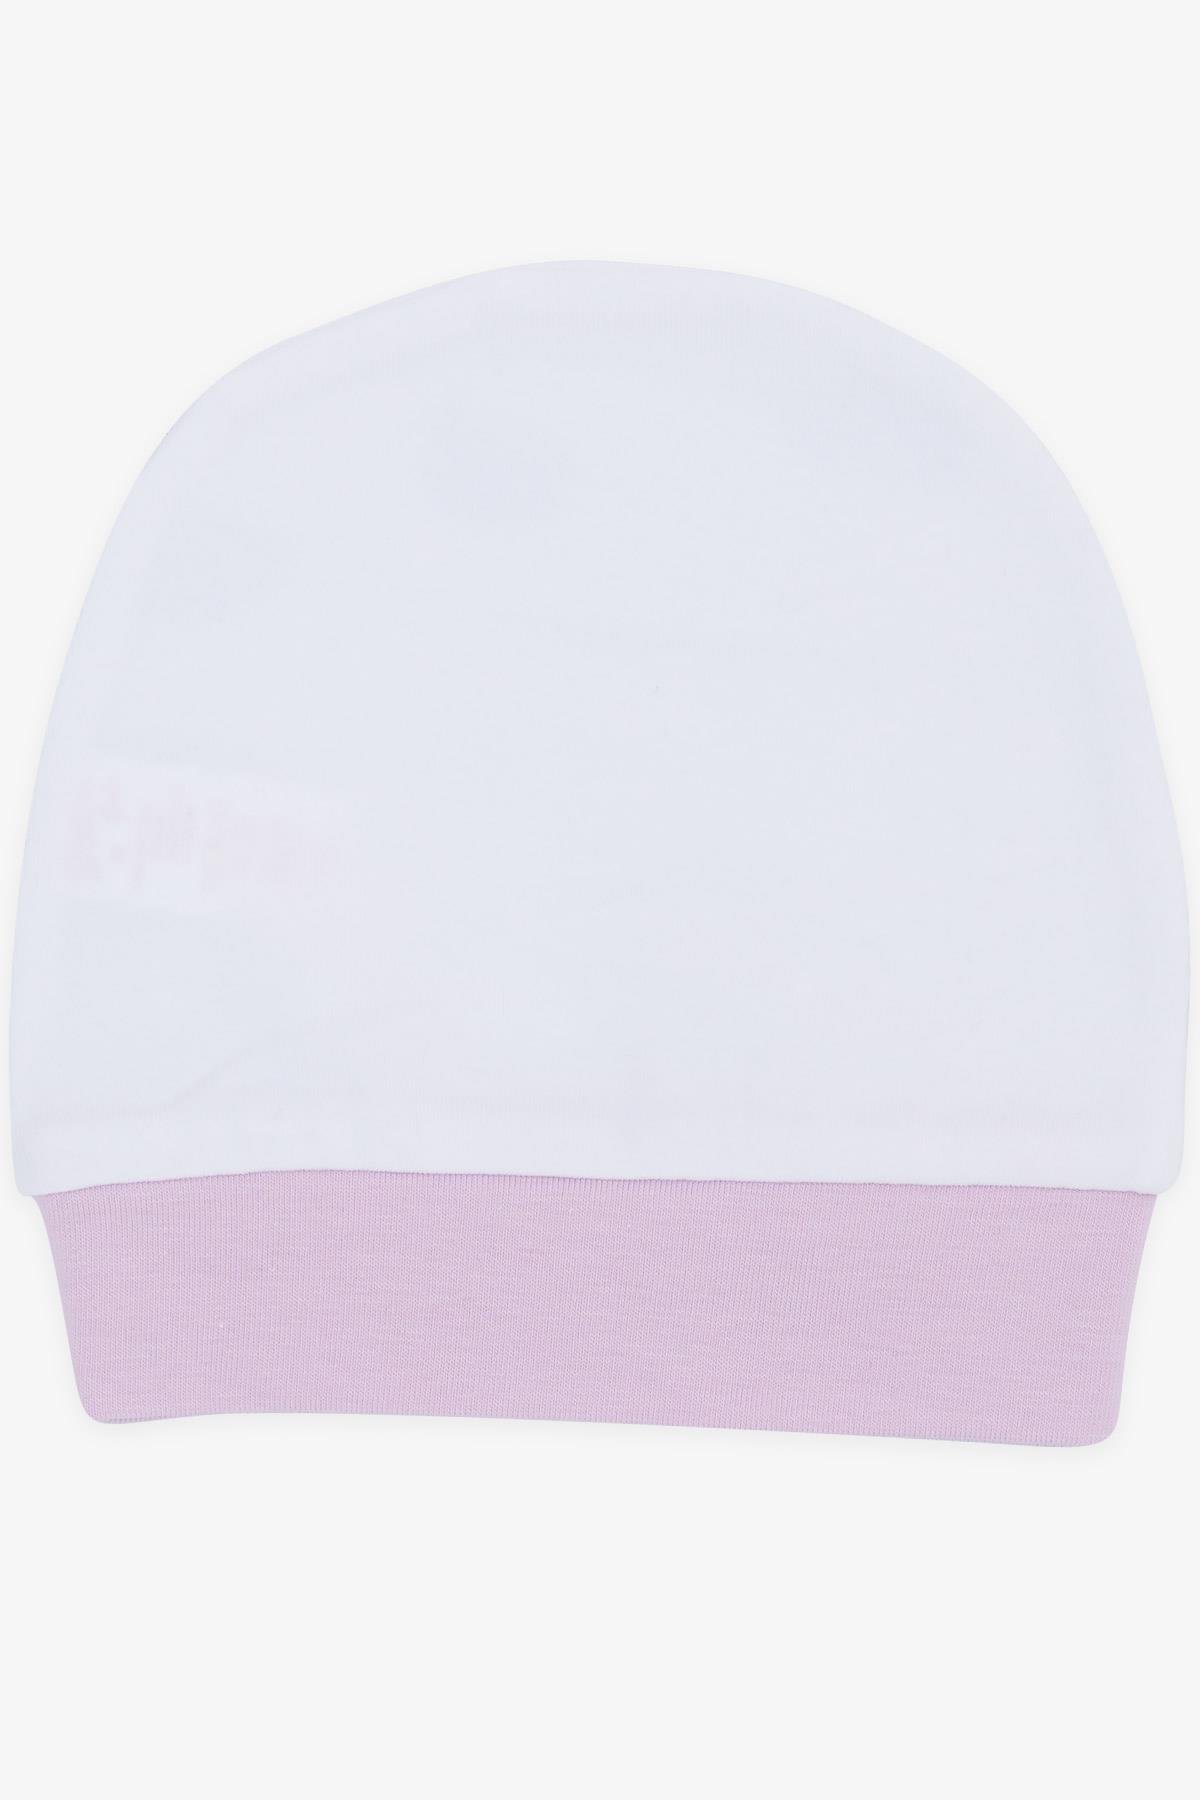 Yenidoğan Bebek Şapkası Beyaz Standart - Minik Bebek Şapka Modelleri |  Breeze